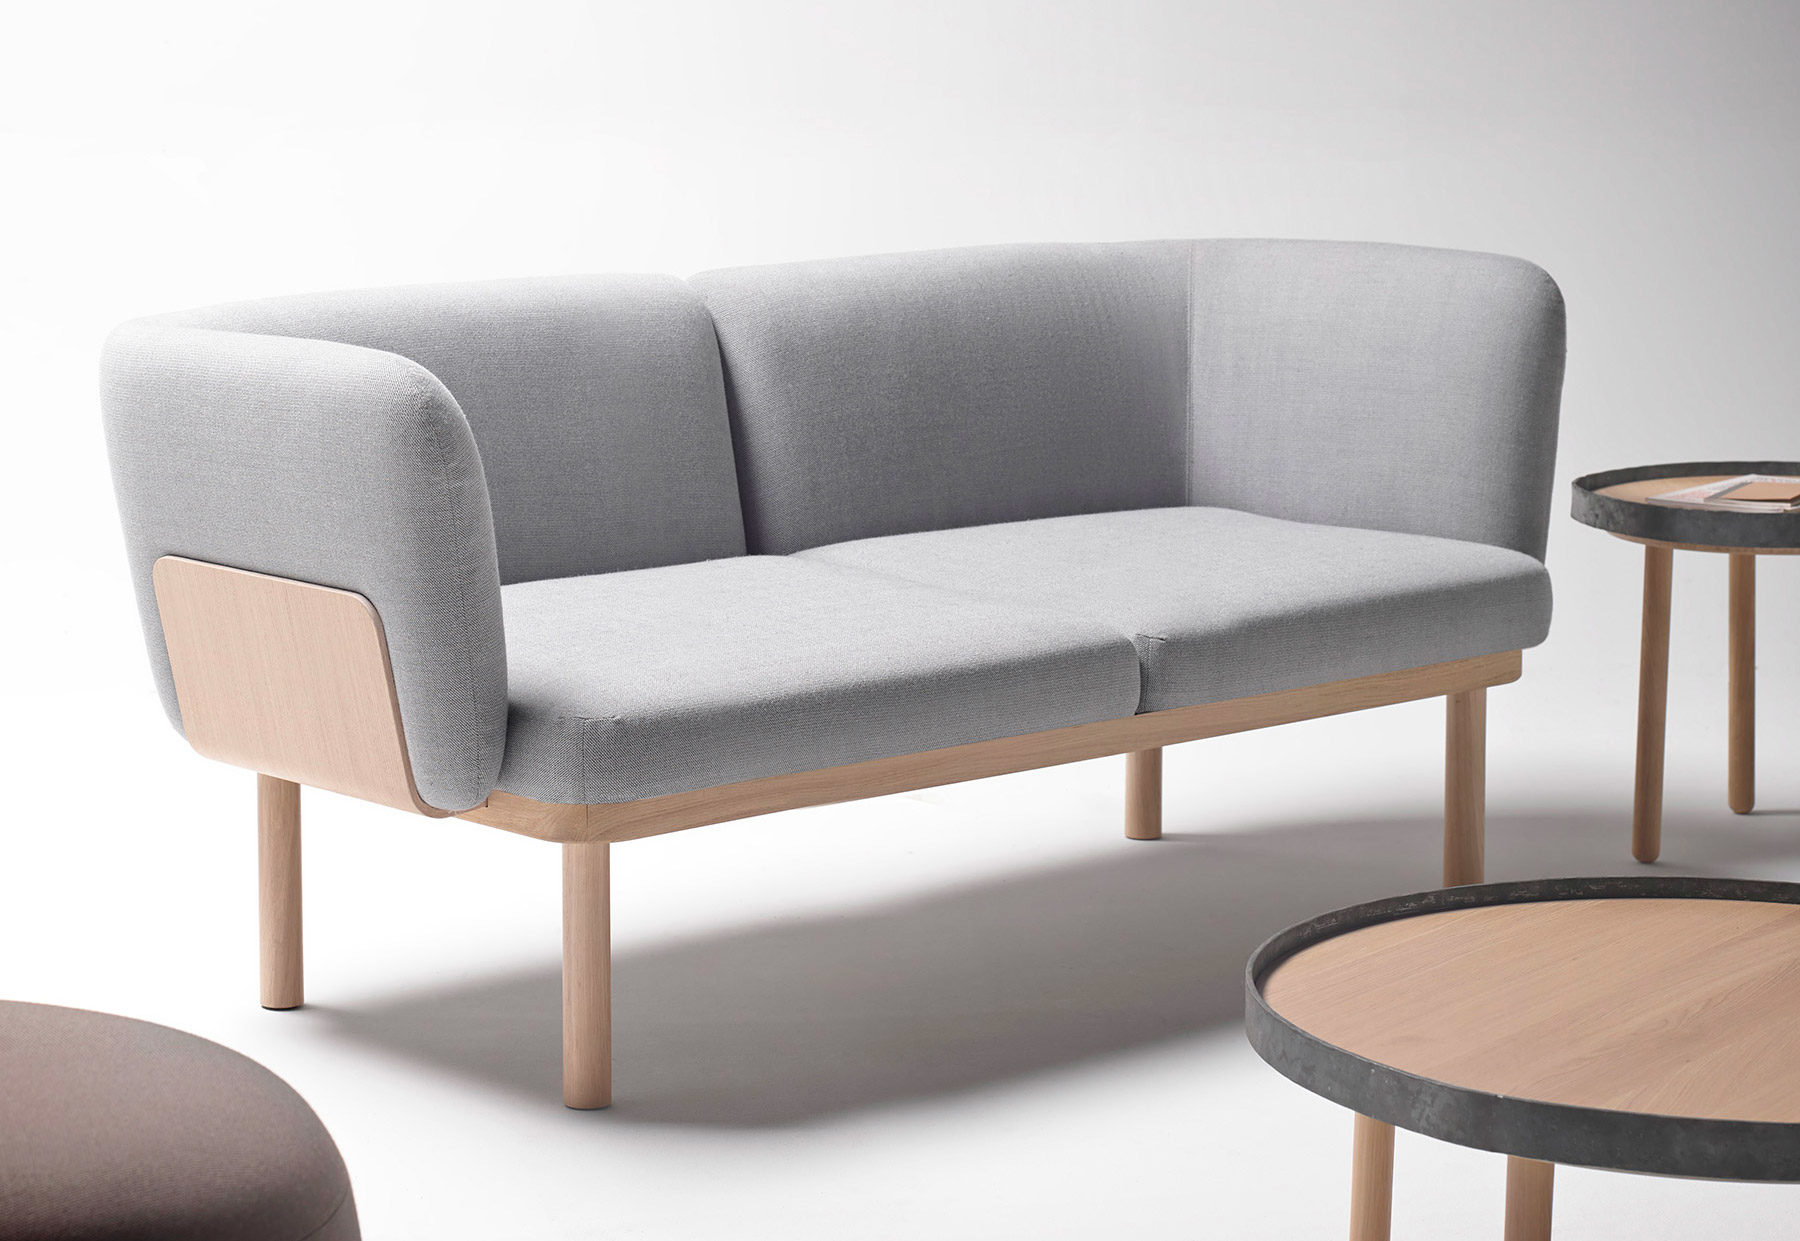 Iratzoki & Lizaso diseña la colección Egon para Alki, sillones, sofás, pufs y coffee tables